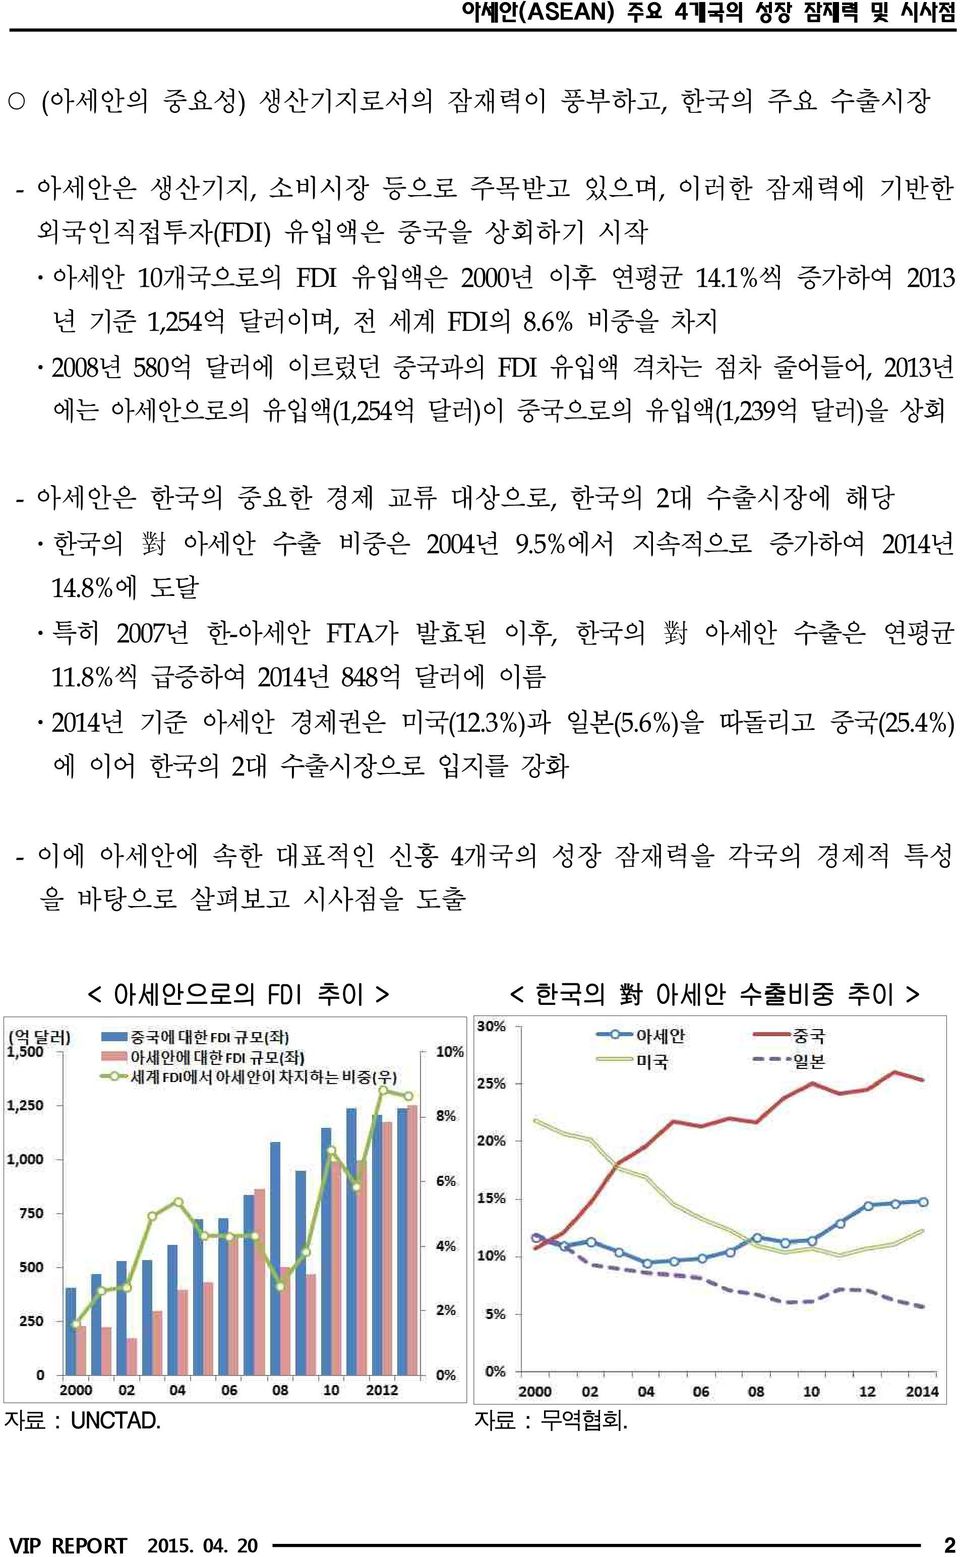 6% 비중을 차지 ㆍ2008년 580억 달러에 이르렀던 중국과의 FDI 유입액 격차는 점차 줄어들어, 2013년 에는 아세안으로의 유입액(1,254억 달러)이 중국으로의 유입액(1,239억 달러)을 상회 - 아세안은 한국의 중요한 경제 교류 대상으로, 한국의 2대 수출시장에 해당 ㆍ한국의 對 아세안 수출 비중은 2004년